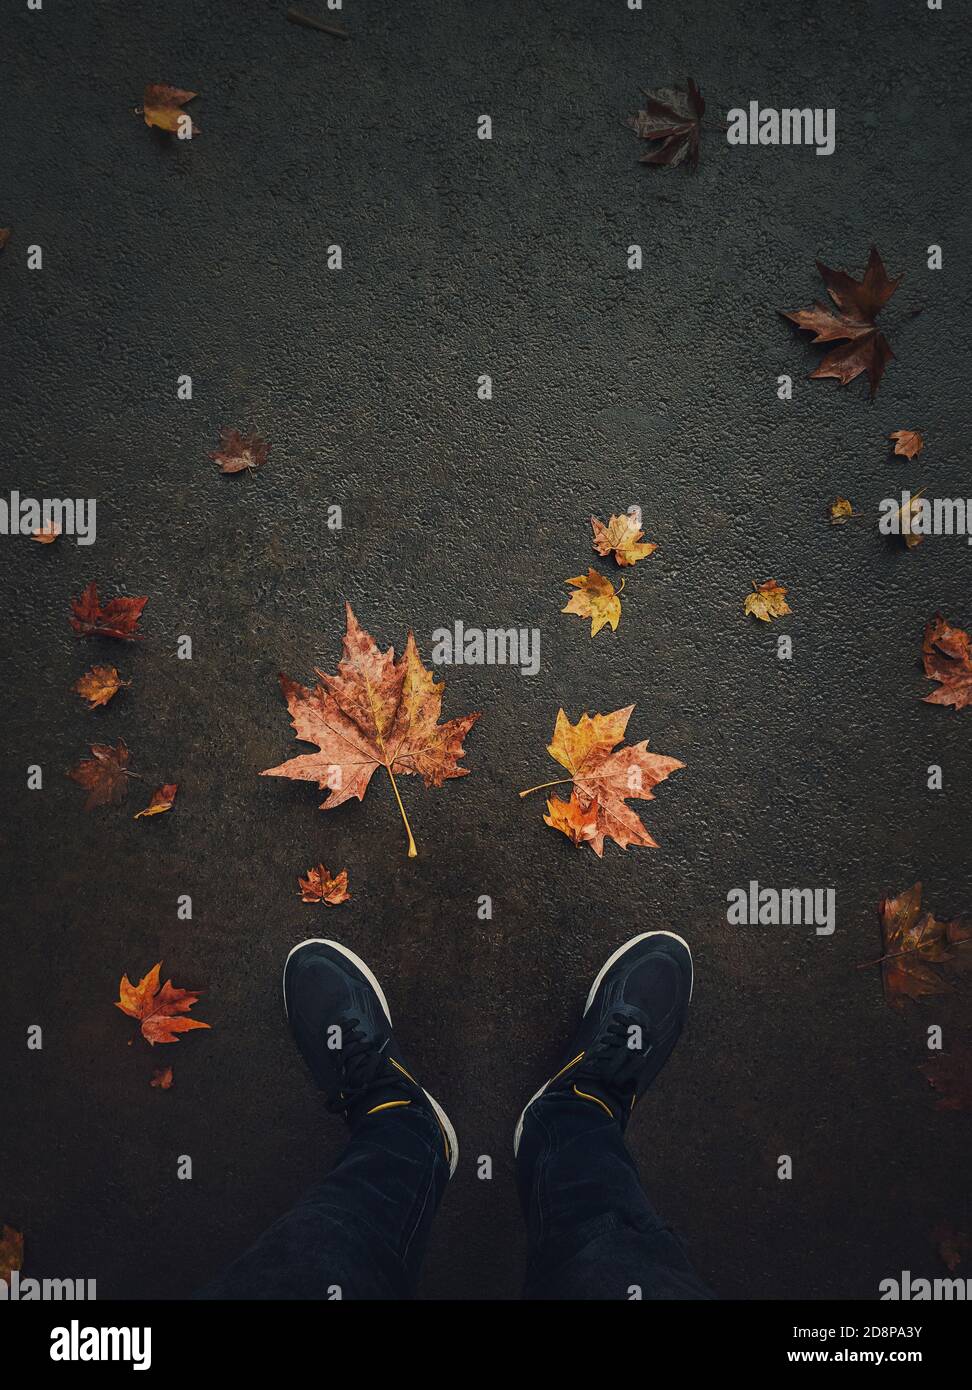 Herbstsaison Lifestyle. High-Angle-Ansicht der Mann Füße auf der Asphaltstraße mit gefallenen verrosteten Ahornblätter. Saisonale Hintergrund, Liebe Herbst Stimmung konzeptu Stockfoto